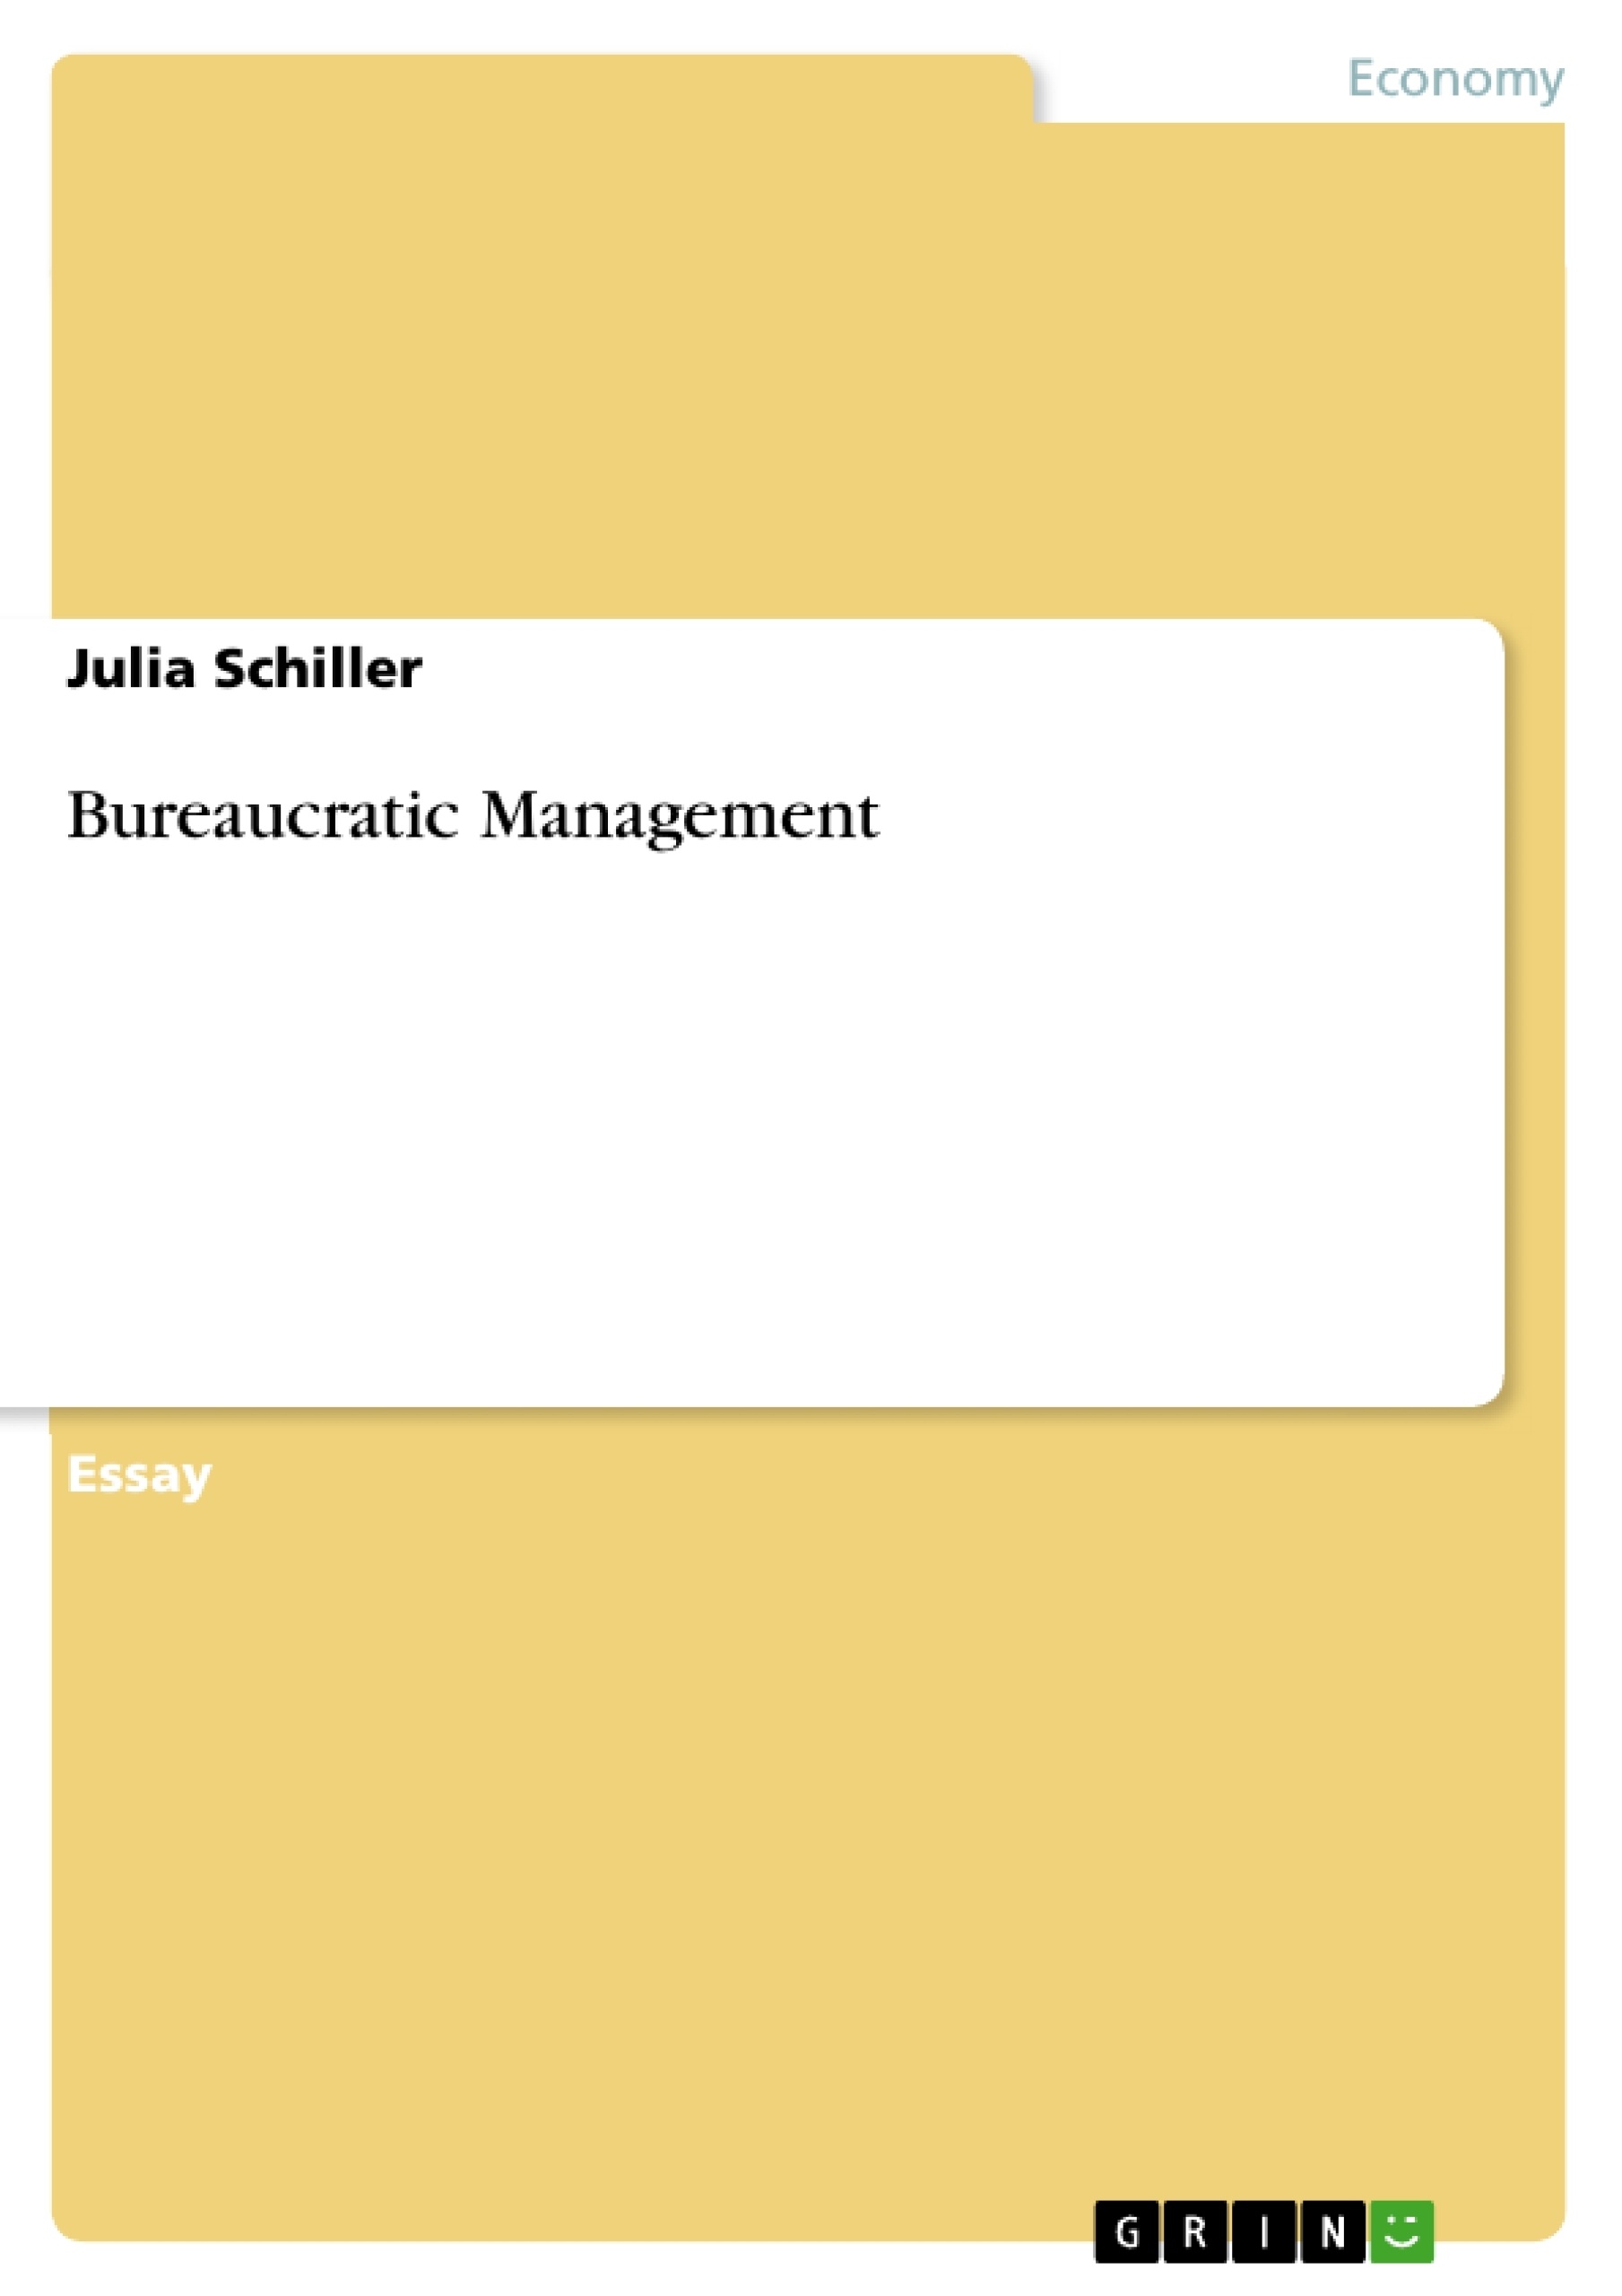 bureaucratic management